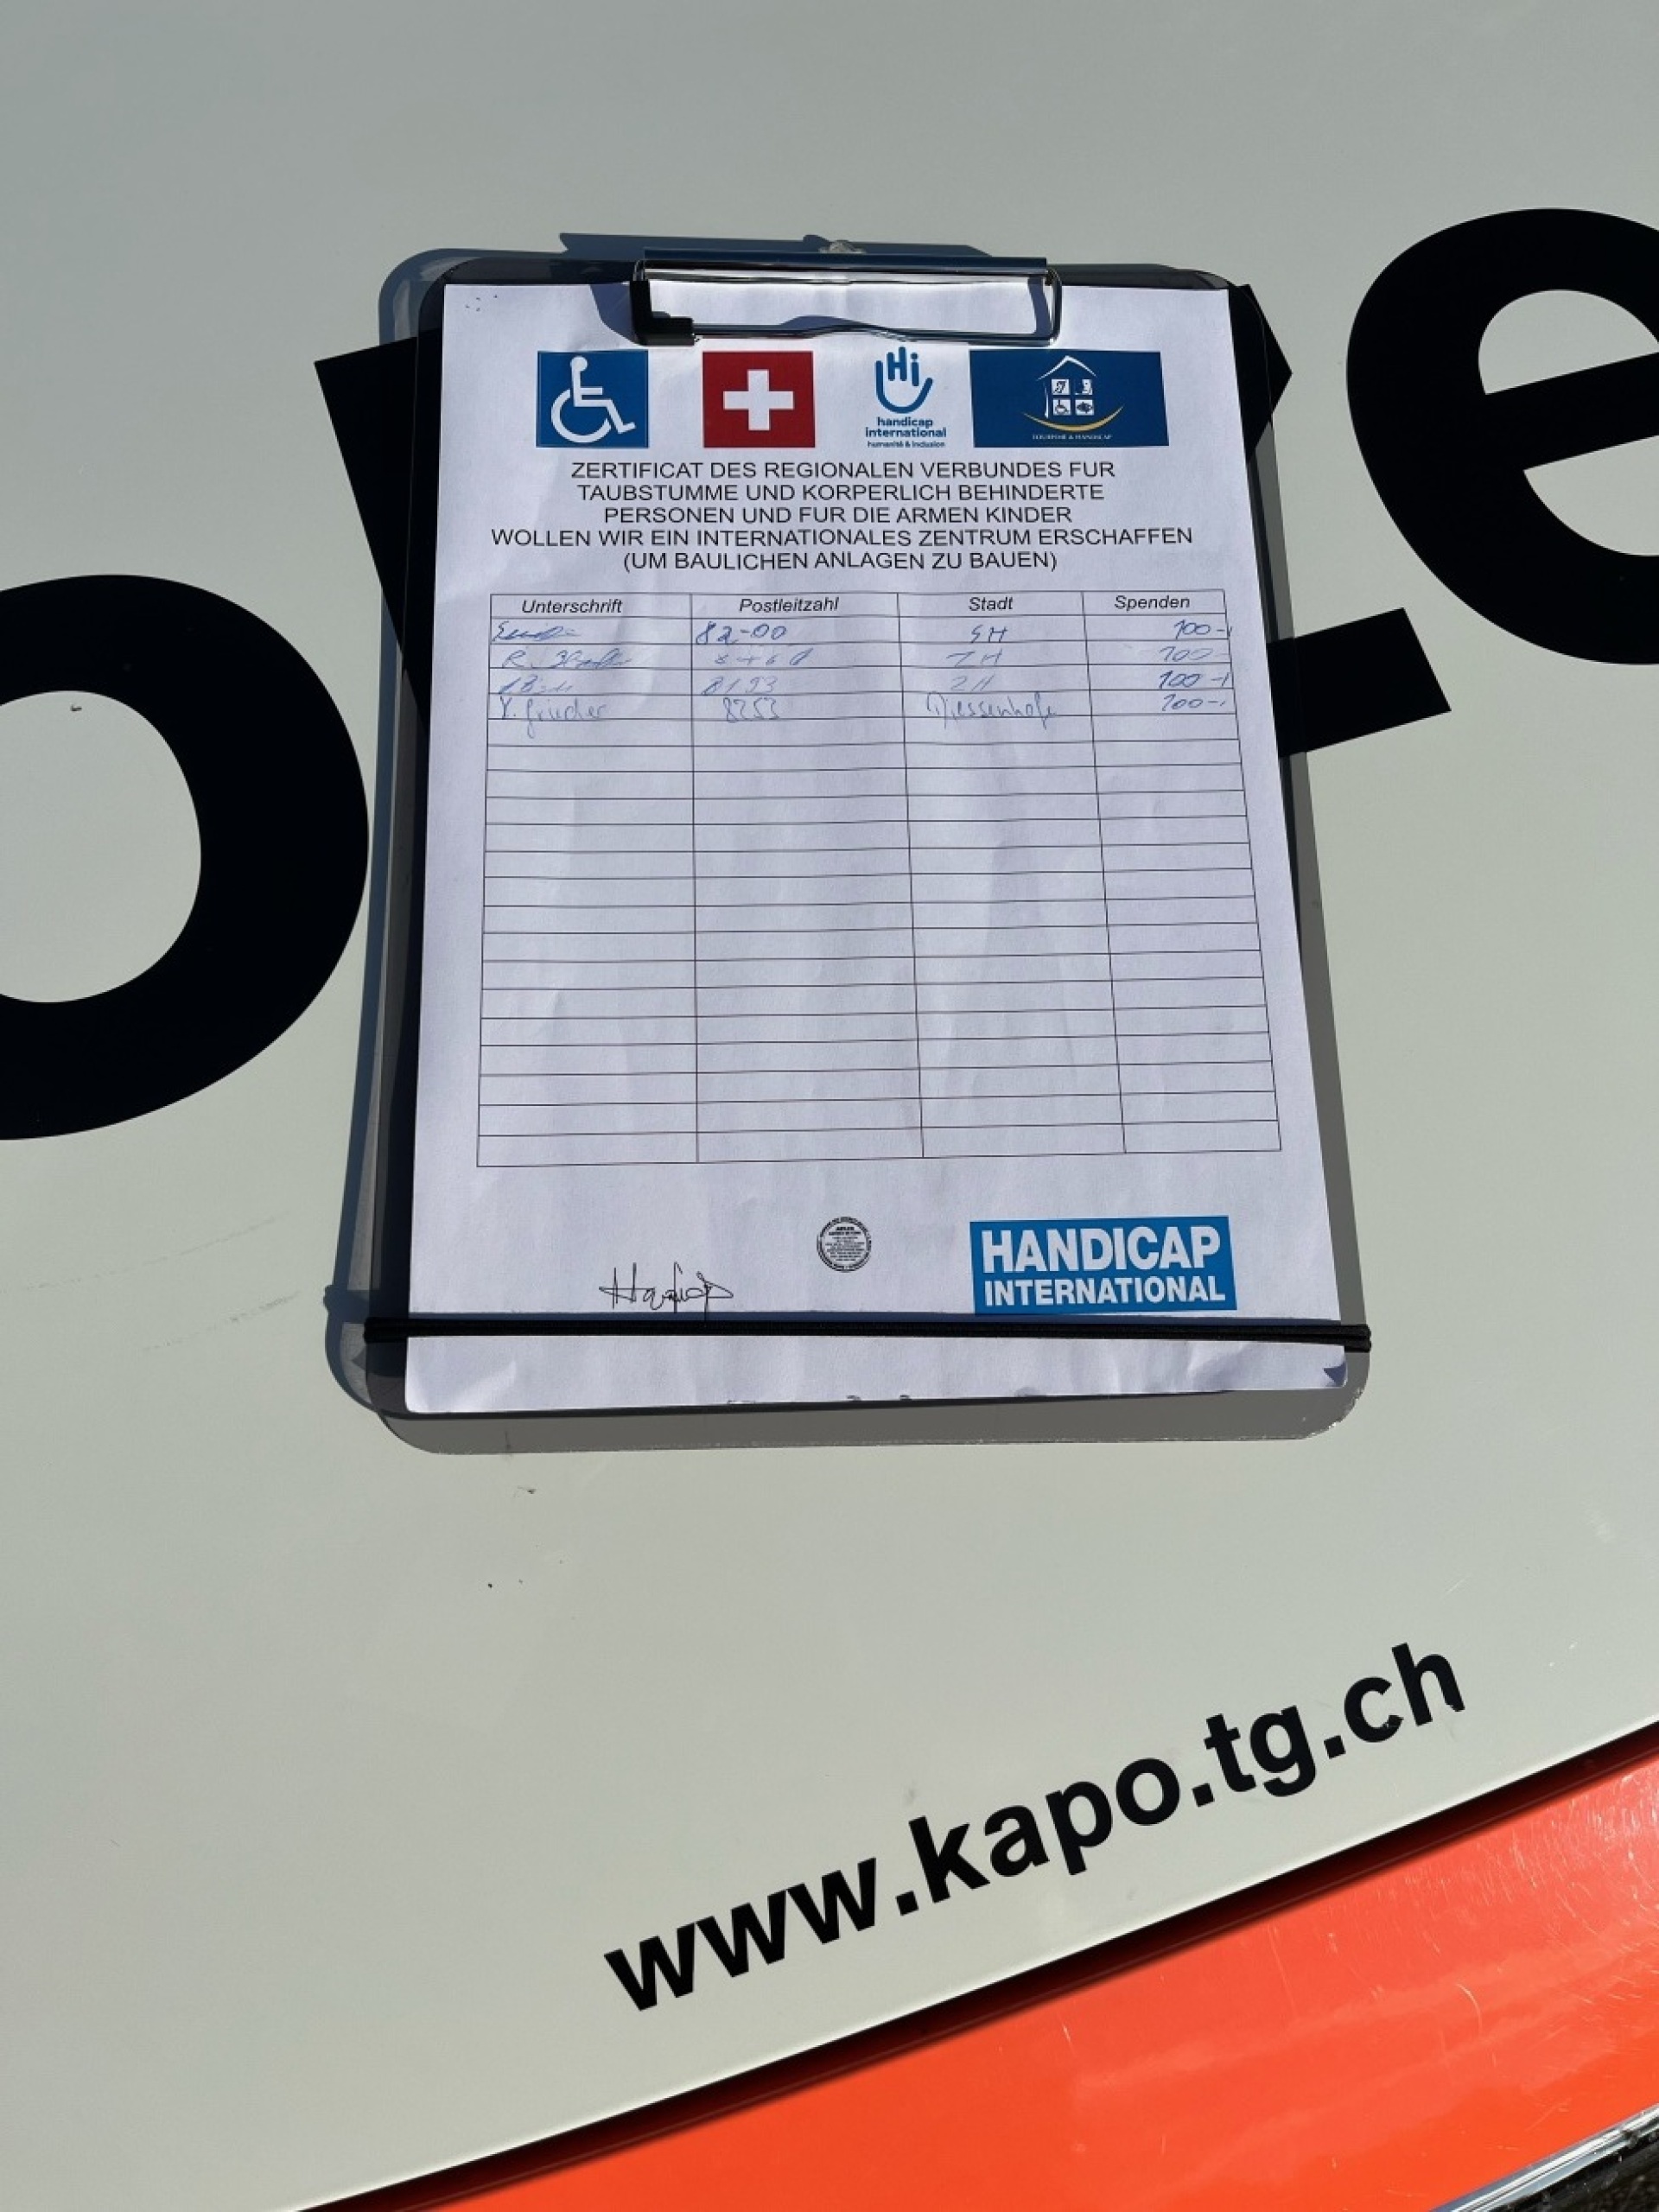 Der Bettler nutzte solche Formulare. Die angeblichen Spenden sind selbst eingetragen, um andere Personen zur Spende zu animieren. (Bild: Kantonspolizei Thurgau)